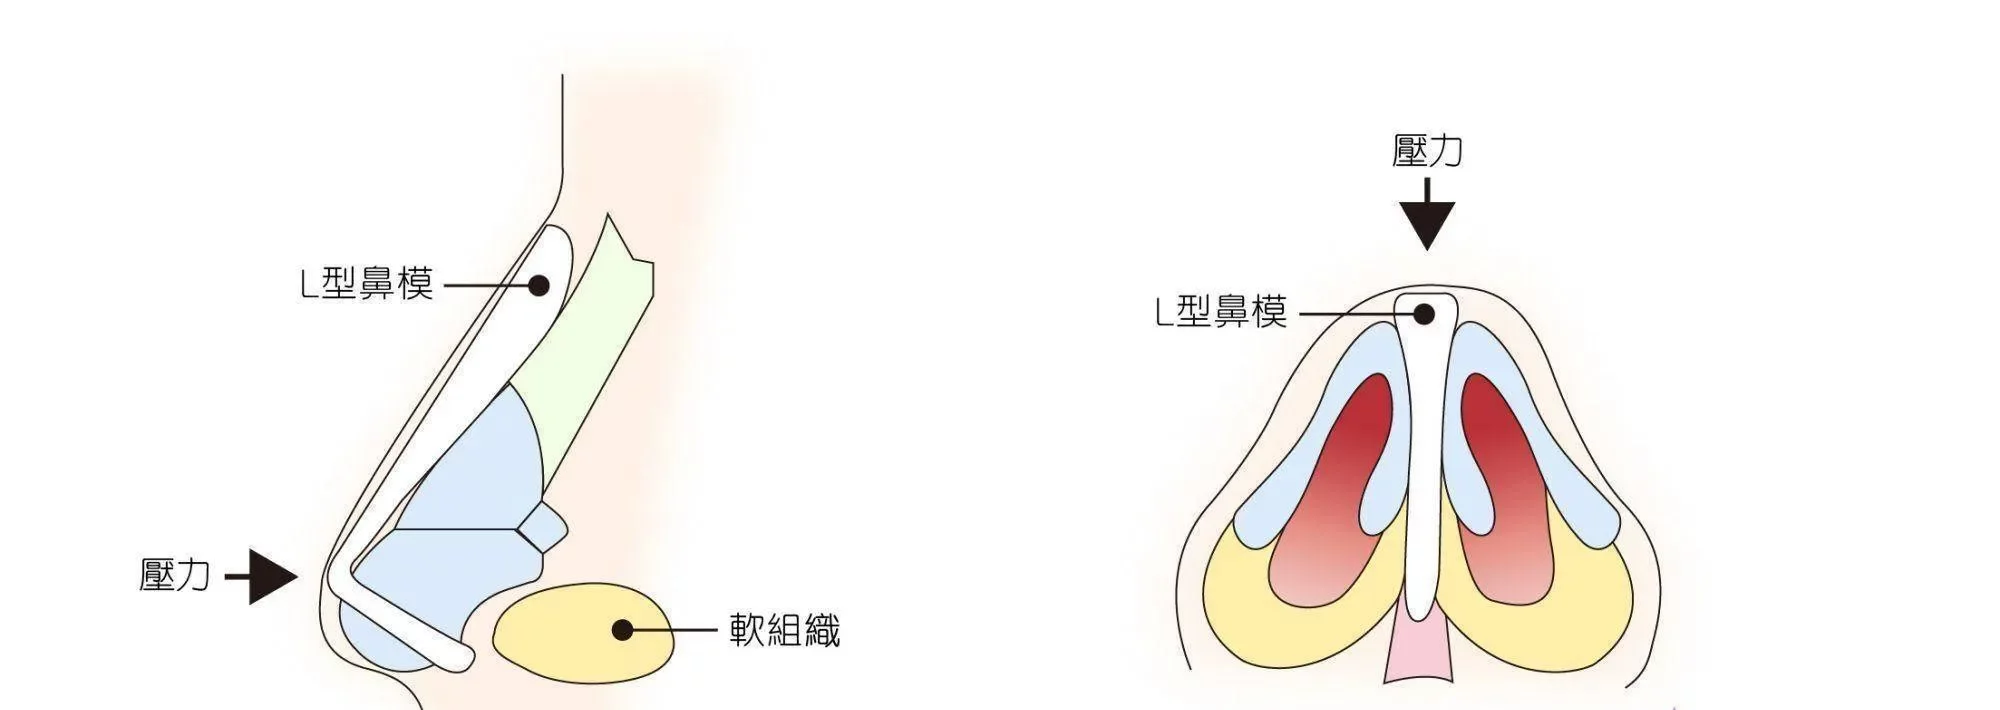 韓式隆鼻手術 | 結構式客製化打造 專屬立體自然鼻形 | 恆美學